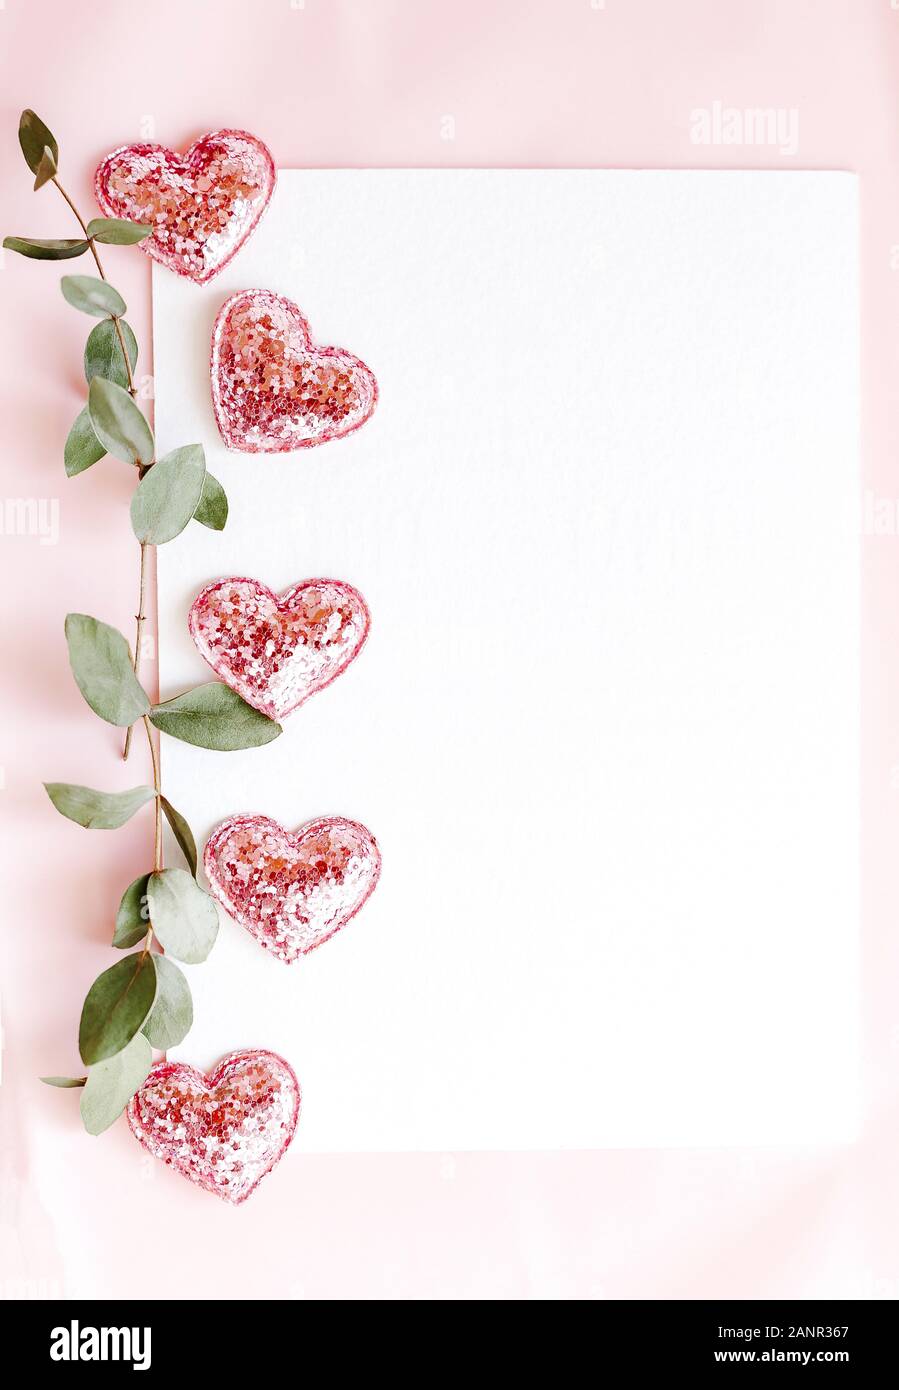 Hintergrund mit Kopie leer auf rosa Hintergrund mit Rosa glitzerten Herzen, Eukalyptus- branche. Weißbuch der Ansicht von oben, flach, minimalistischen Stil. Moke Stockfoto